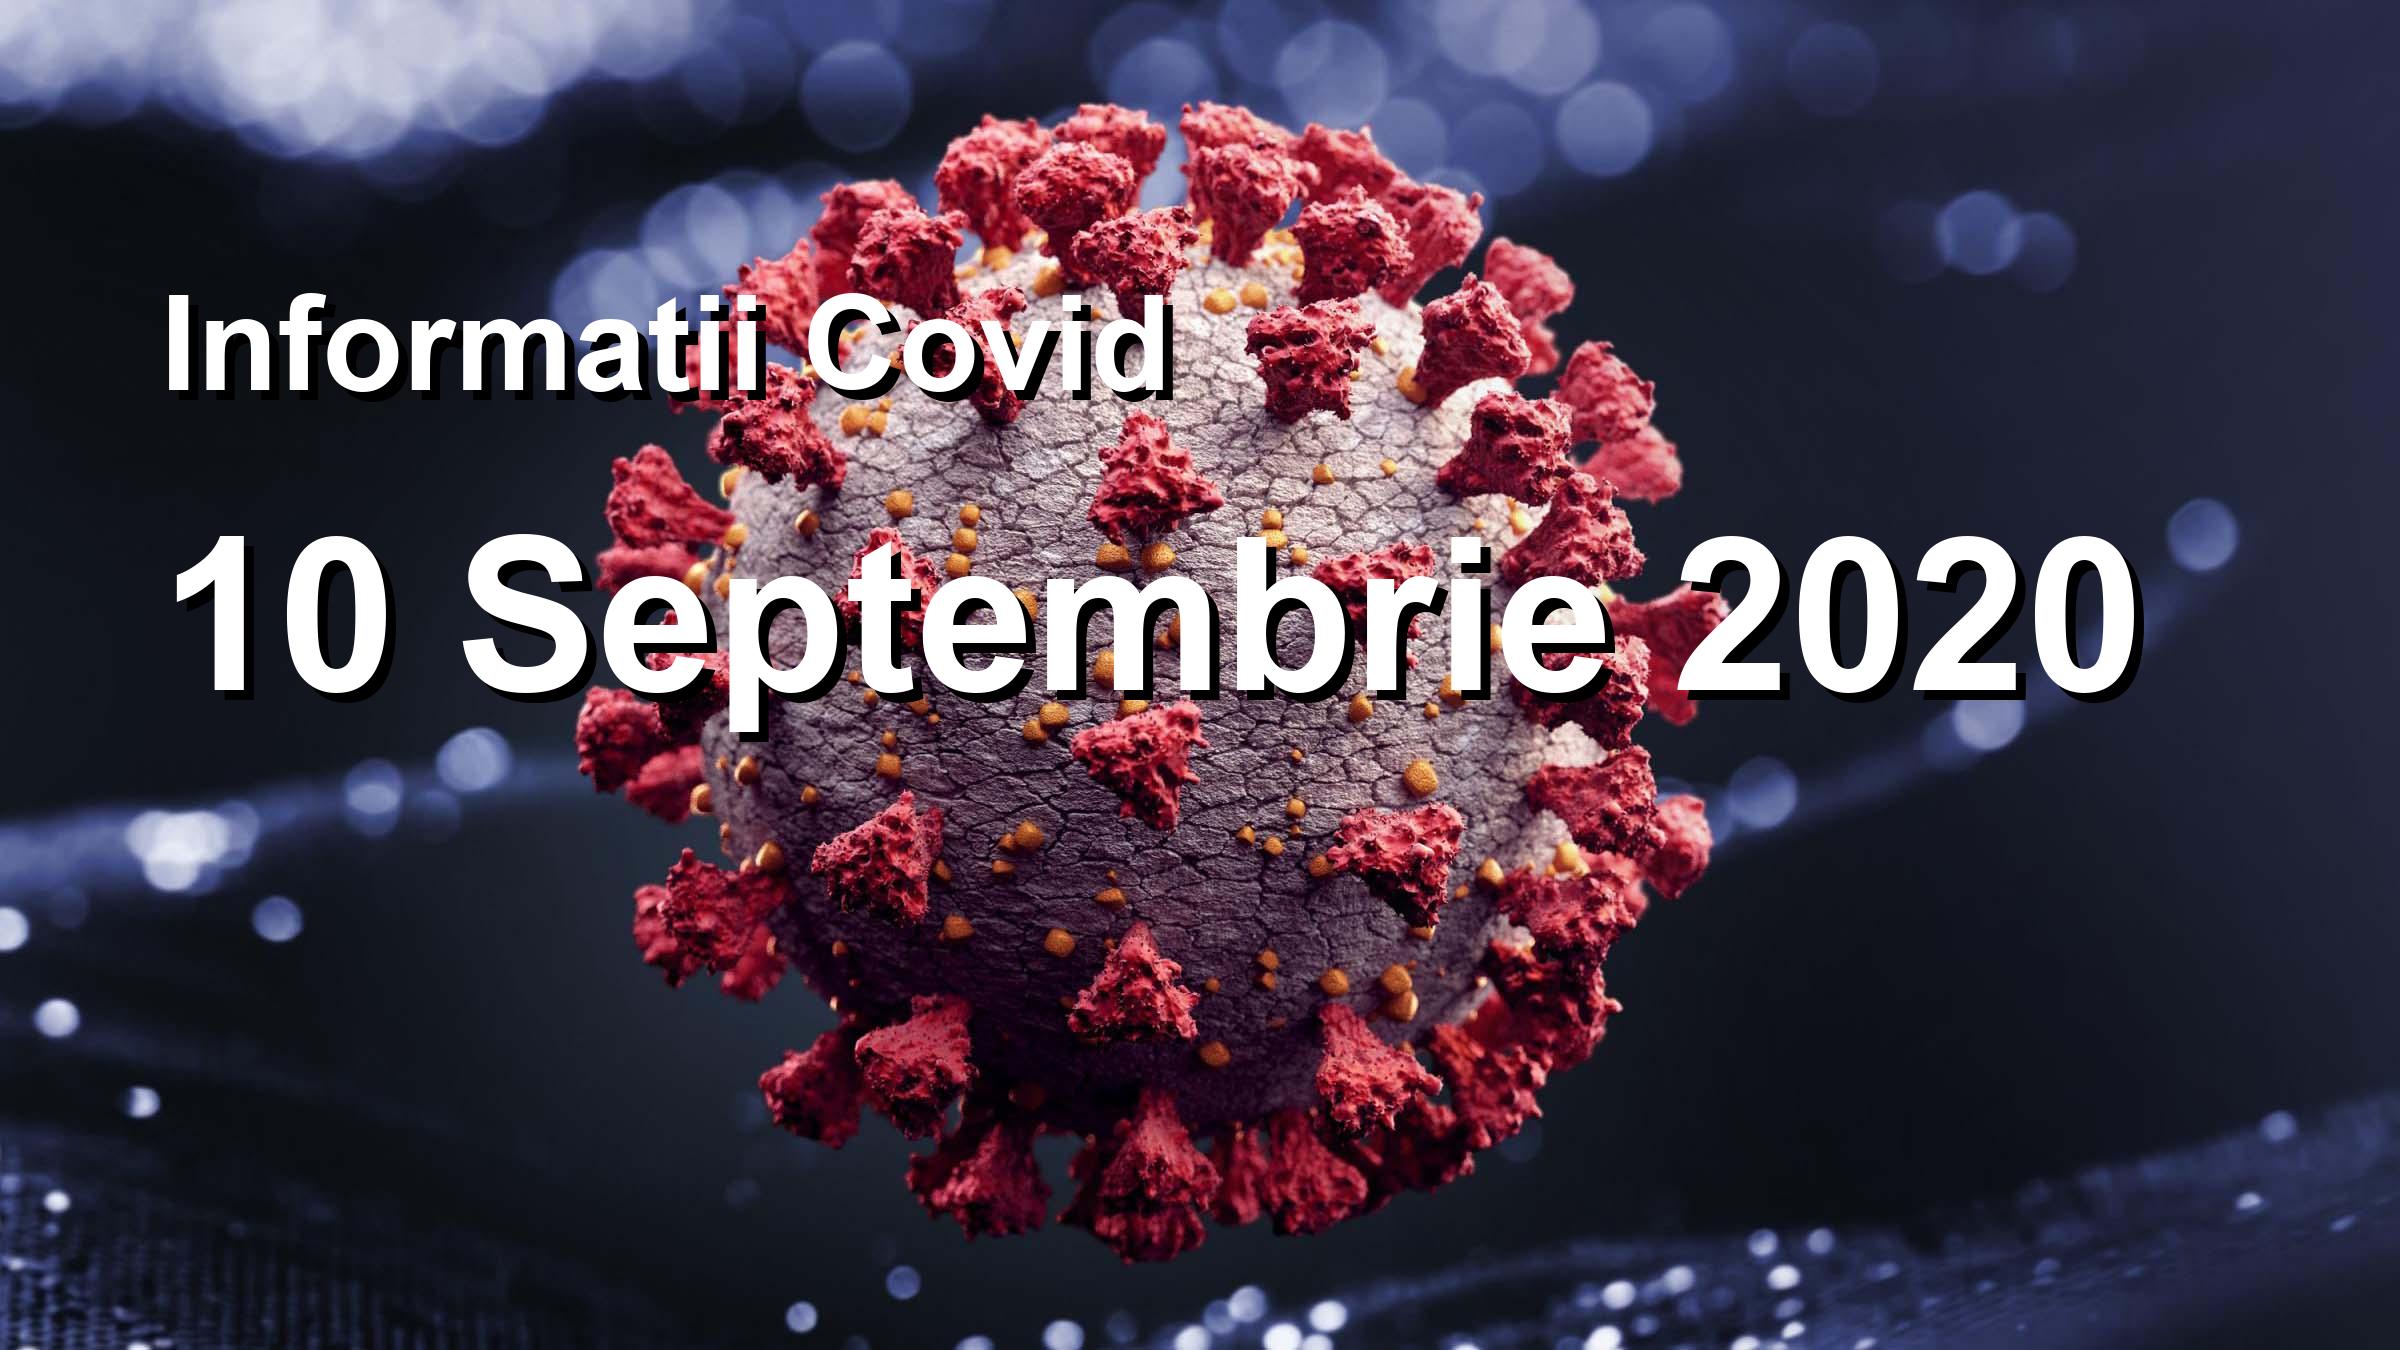 Informatii Covid-19 pentru 10 Septembrie 2020: 1380 infectari, 25185 teste. | Coronavirus Romania